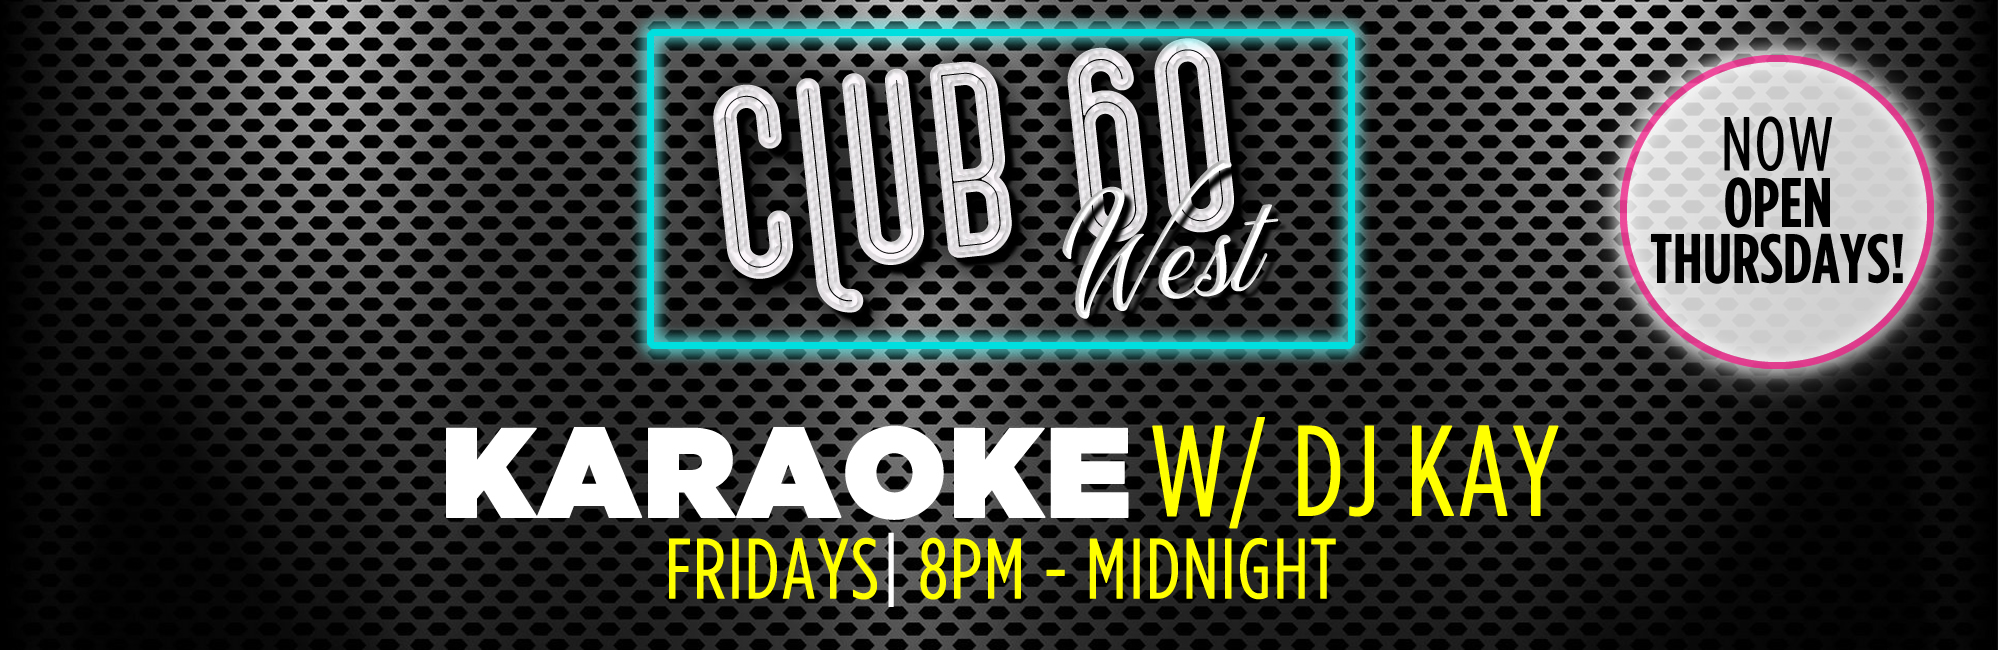 Club 60 West Fridays